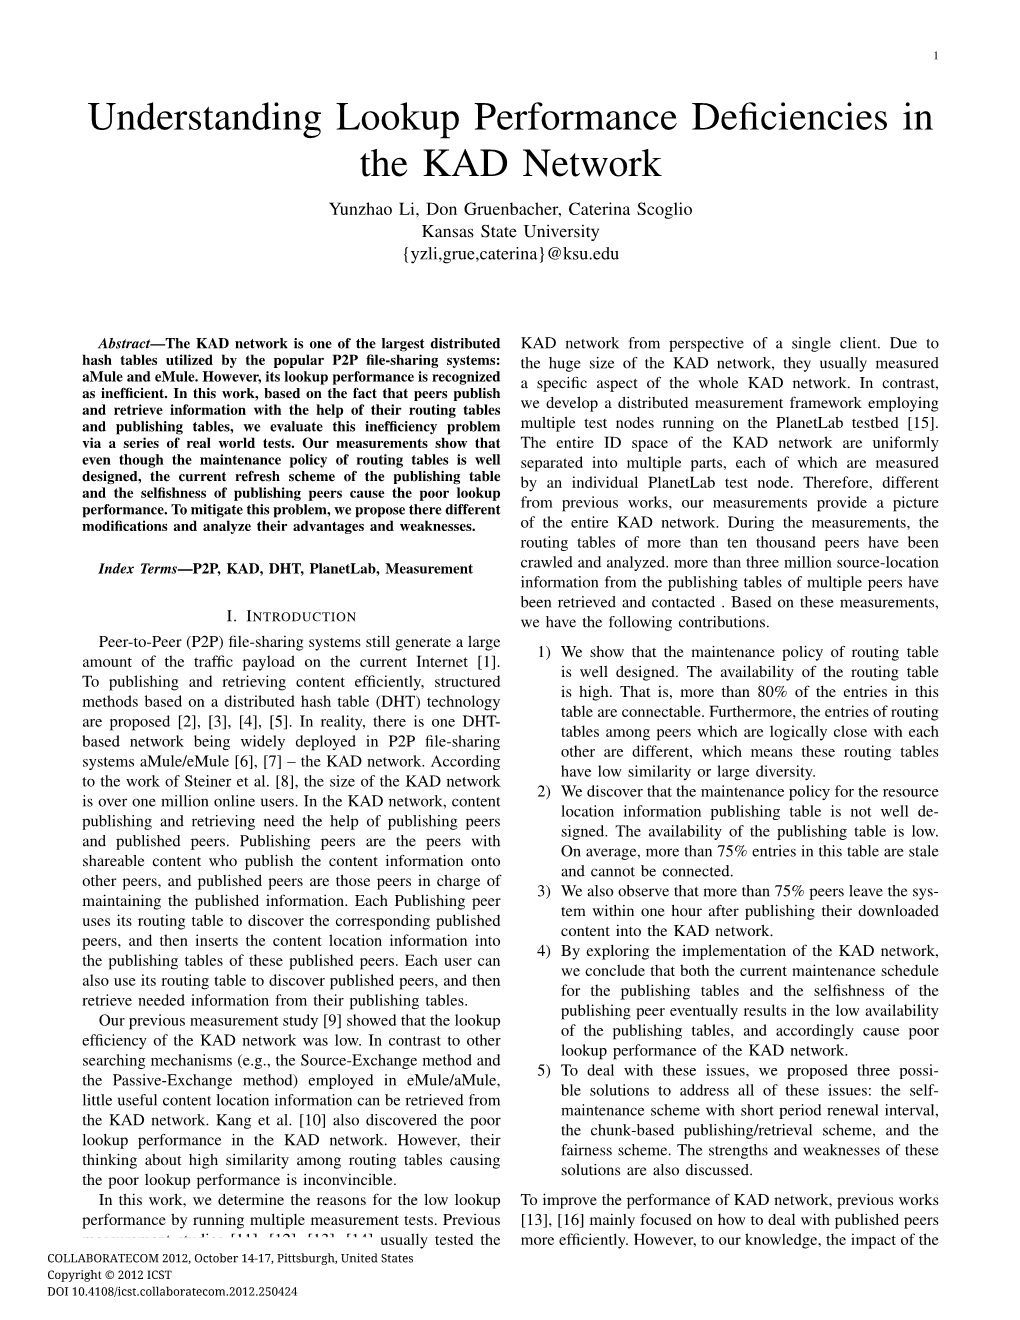 Understanding Lookup Performance Deficiencies in the KAD Network